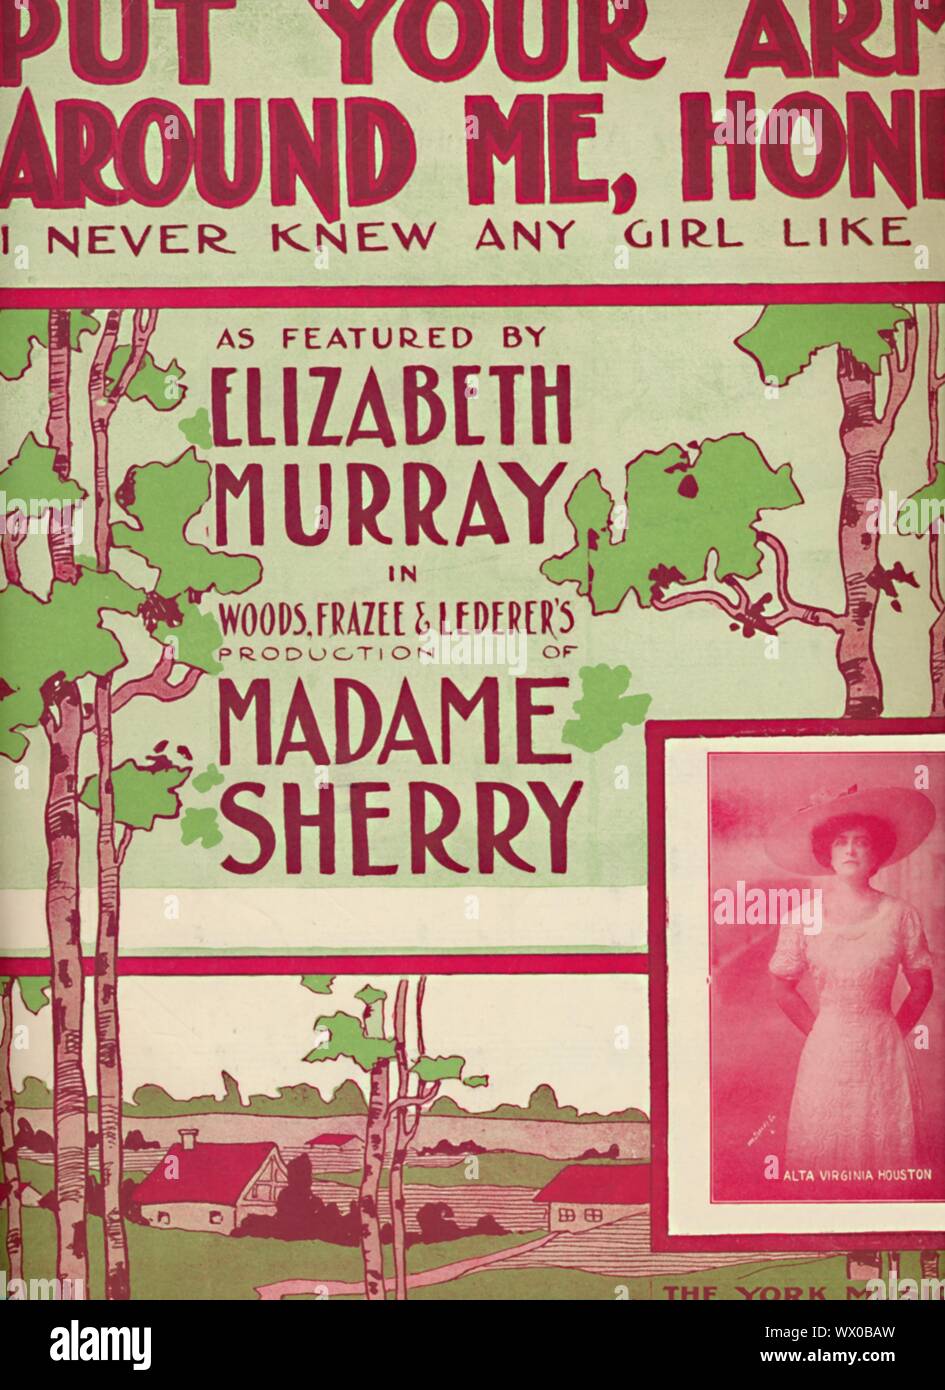 'Legen Sie Ihre Arme um mich, Honig (ich wusste gar nicht, dass ein Mädchen wie du)", 1910. Von Elizabeth Murray in Wäldern, Frazee&amp; der Lederer Produktion von "Madame Sherry"", einen "französischen Vaudeville" Musical in drei Akten. Abdeckung zu Noten für einen Song komponiert von Albert von Tilzer mit Texten von junie McCree. [Die New York Music Co., Broadway, New York, 1910] Stockfoto